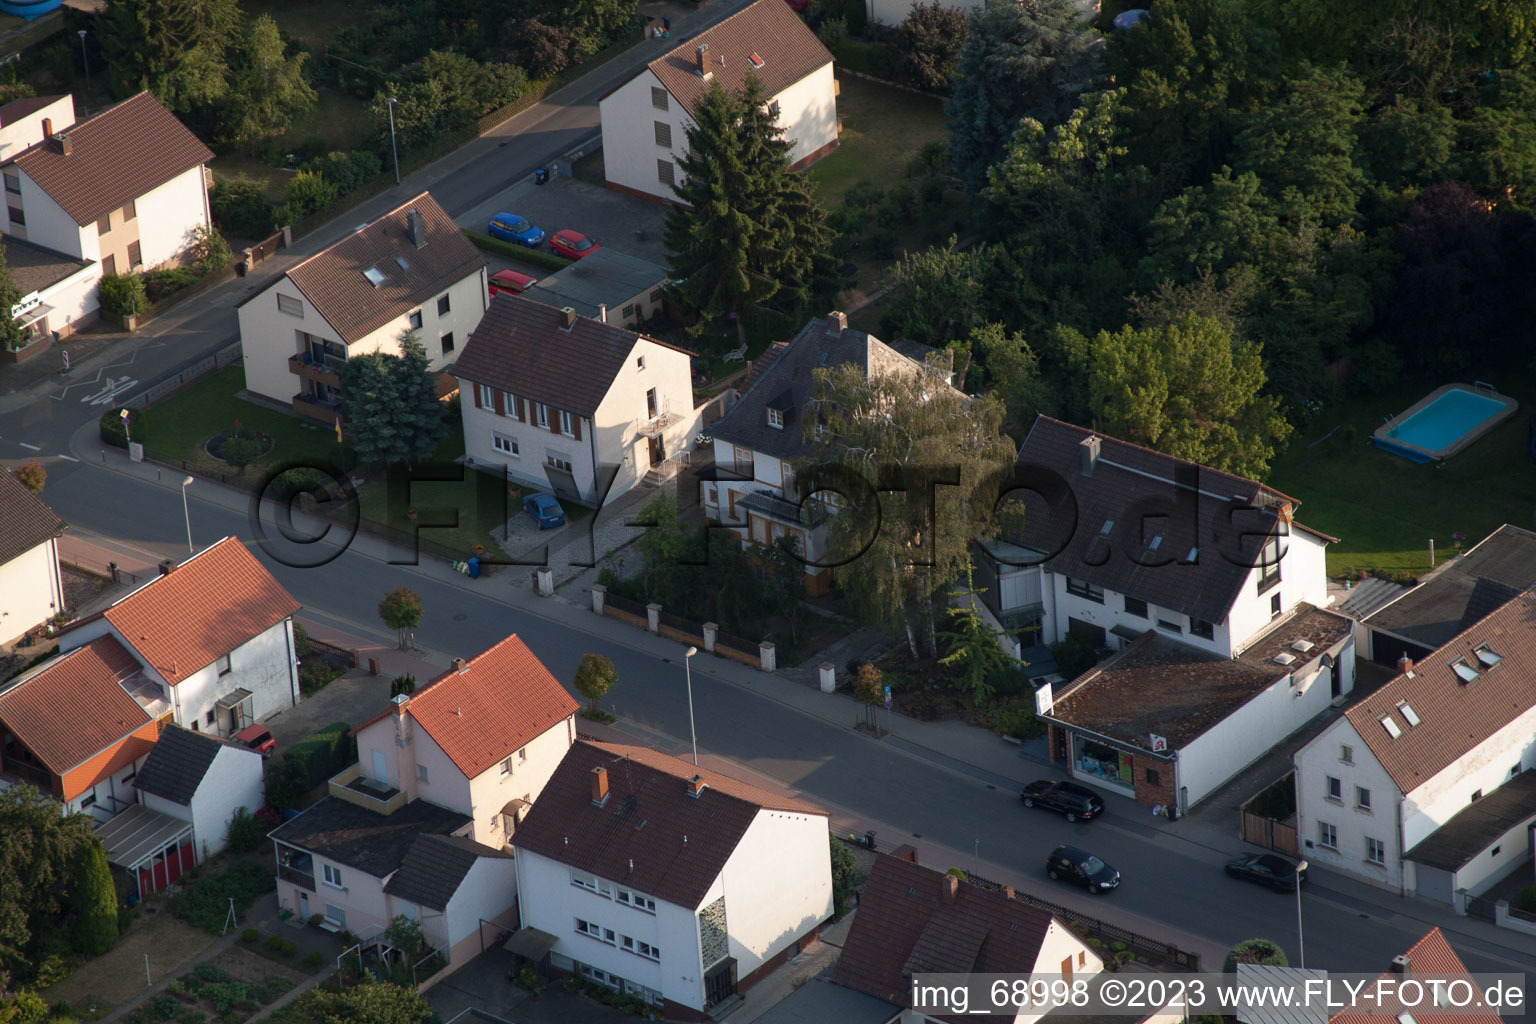 Aerial photograpy of District Dannstadt in Dannstadt-Schauernheim in the state Rhineland-Palatinate, Germany